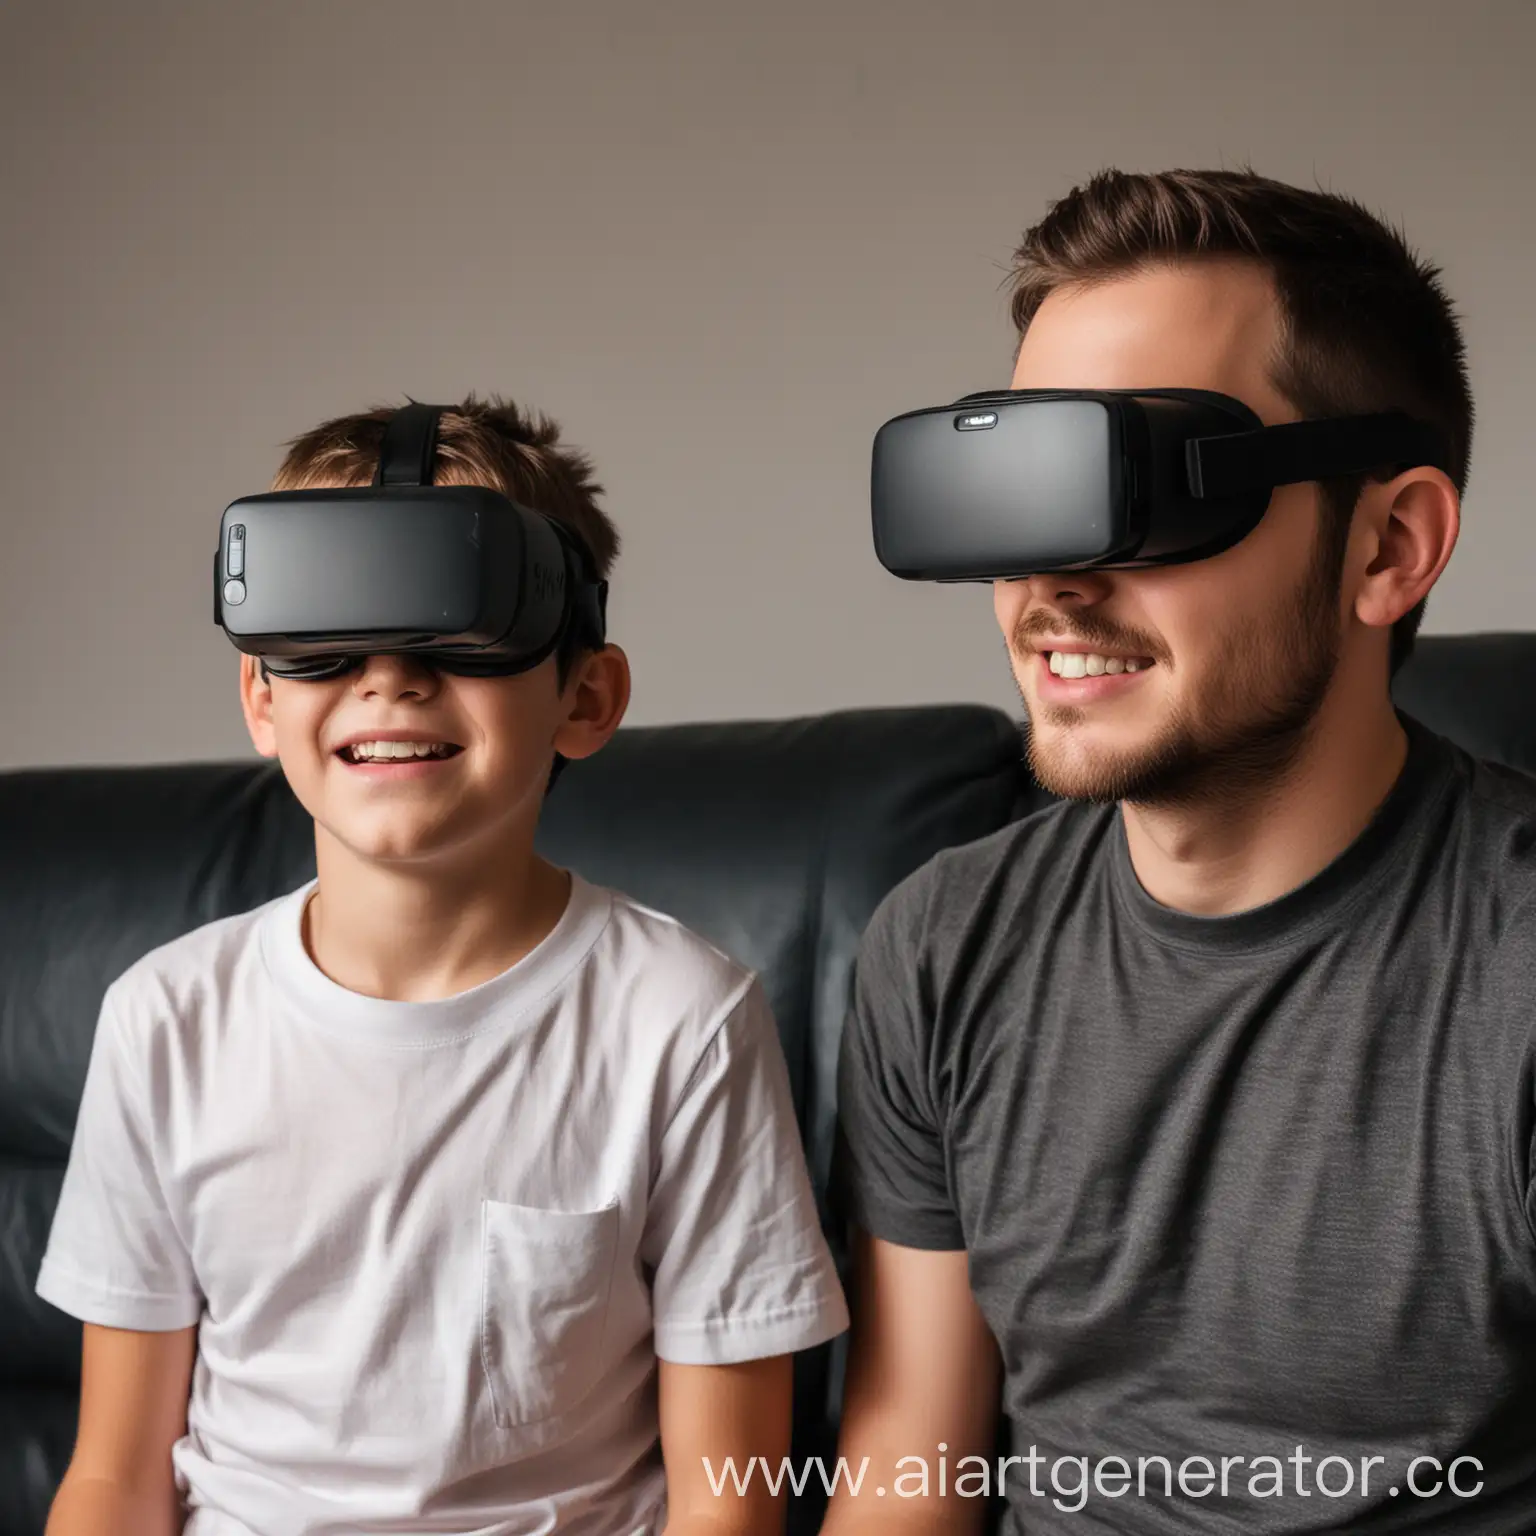 Отец 35 лет заходит в клуб виртуальной реальности Nexus со своим сыном , которому 12 лет. На их головах нет виртуальных очков. Они оба счастливы. 